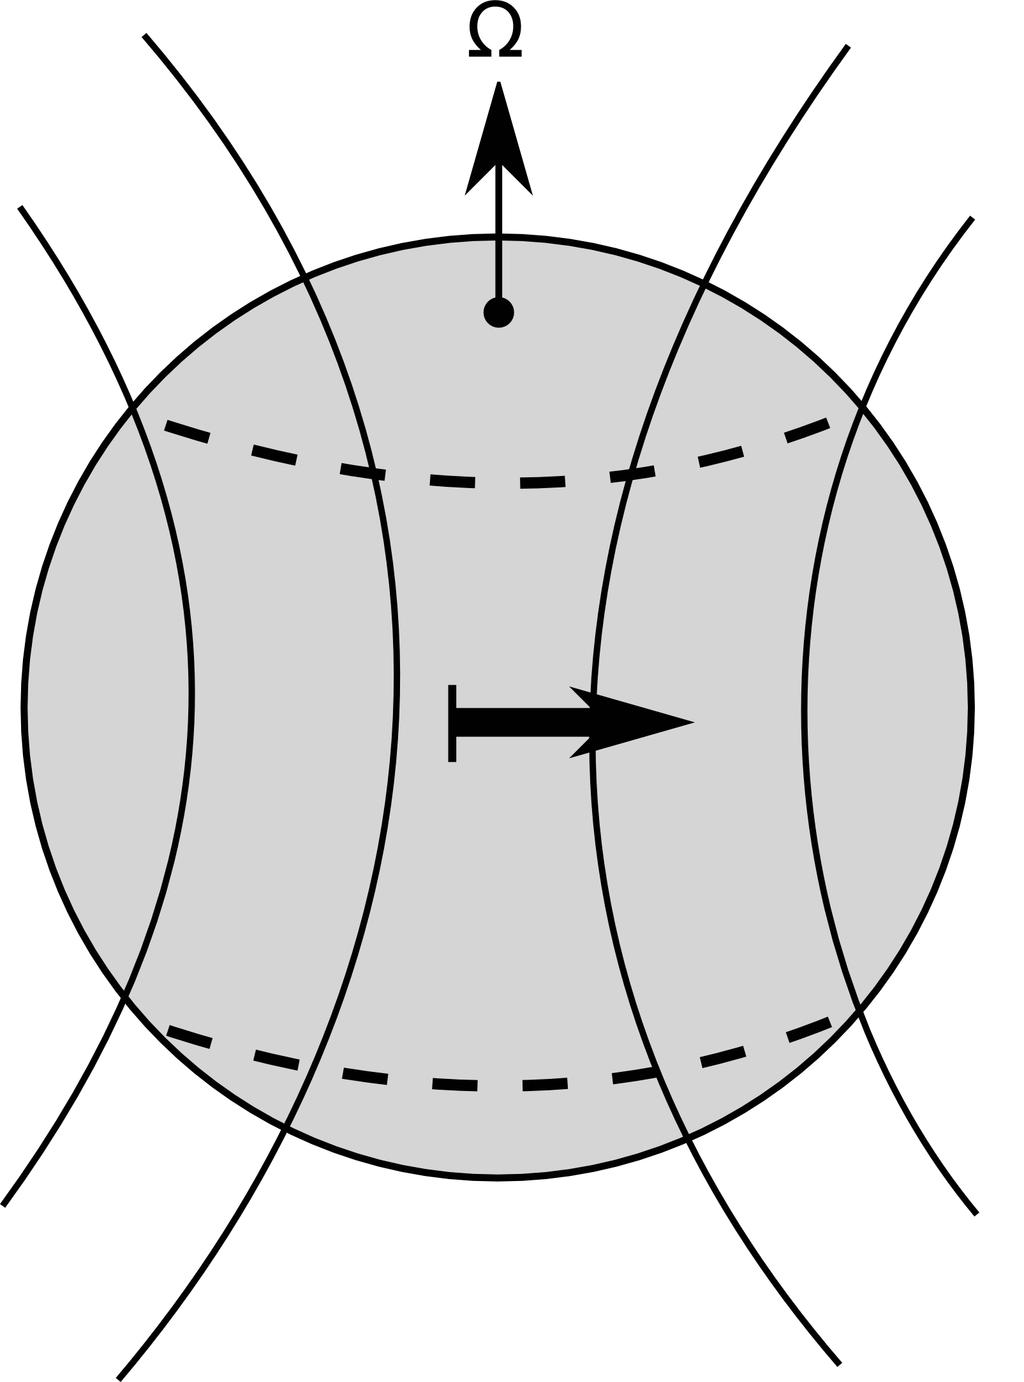 220 Φυσική του ήλιου και του διαστήματος Σχήμα 10.5: Τα αρχικά στάδια του ηλιακού μαγνητικού πεδίου σύμφωνα με το μοντέλο του Babcock (1961).